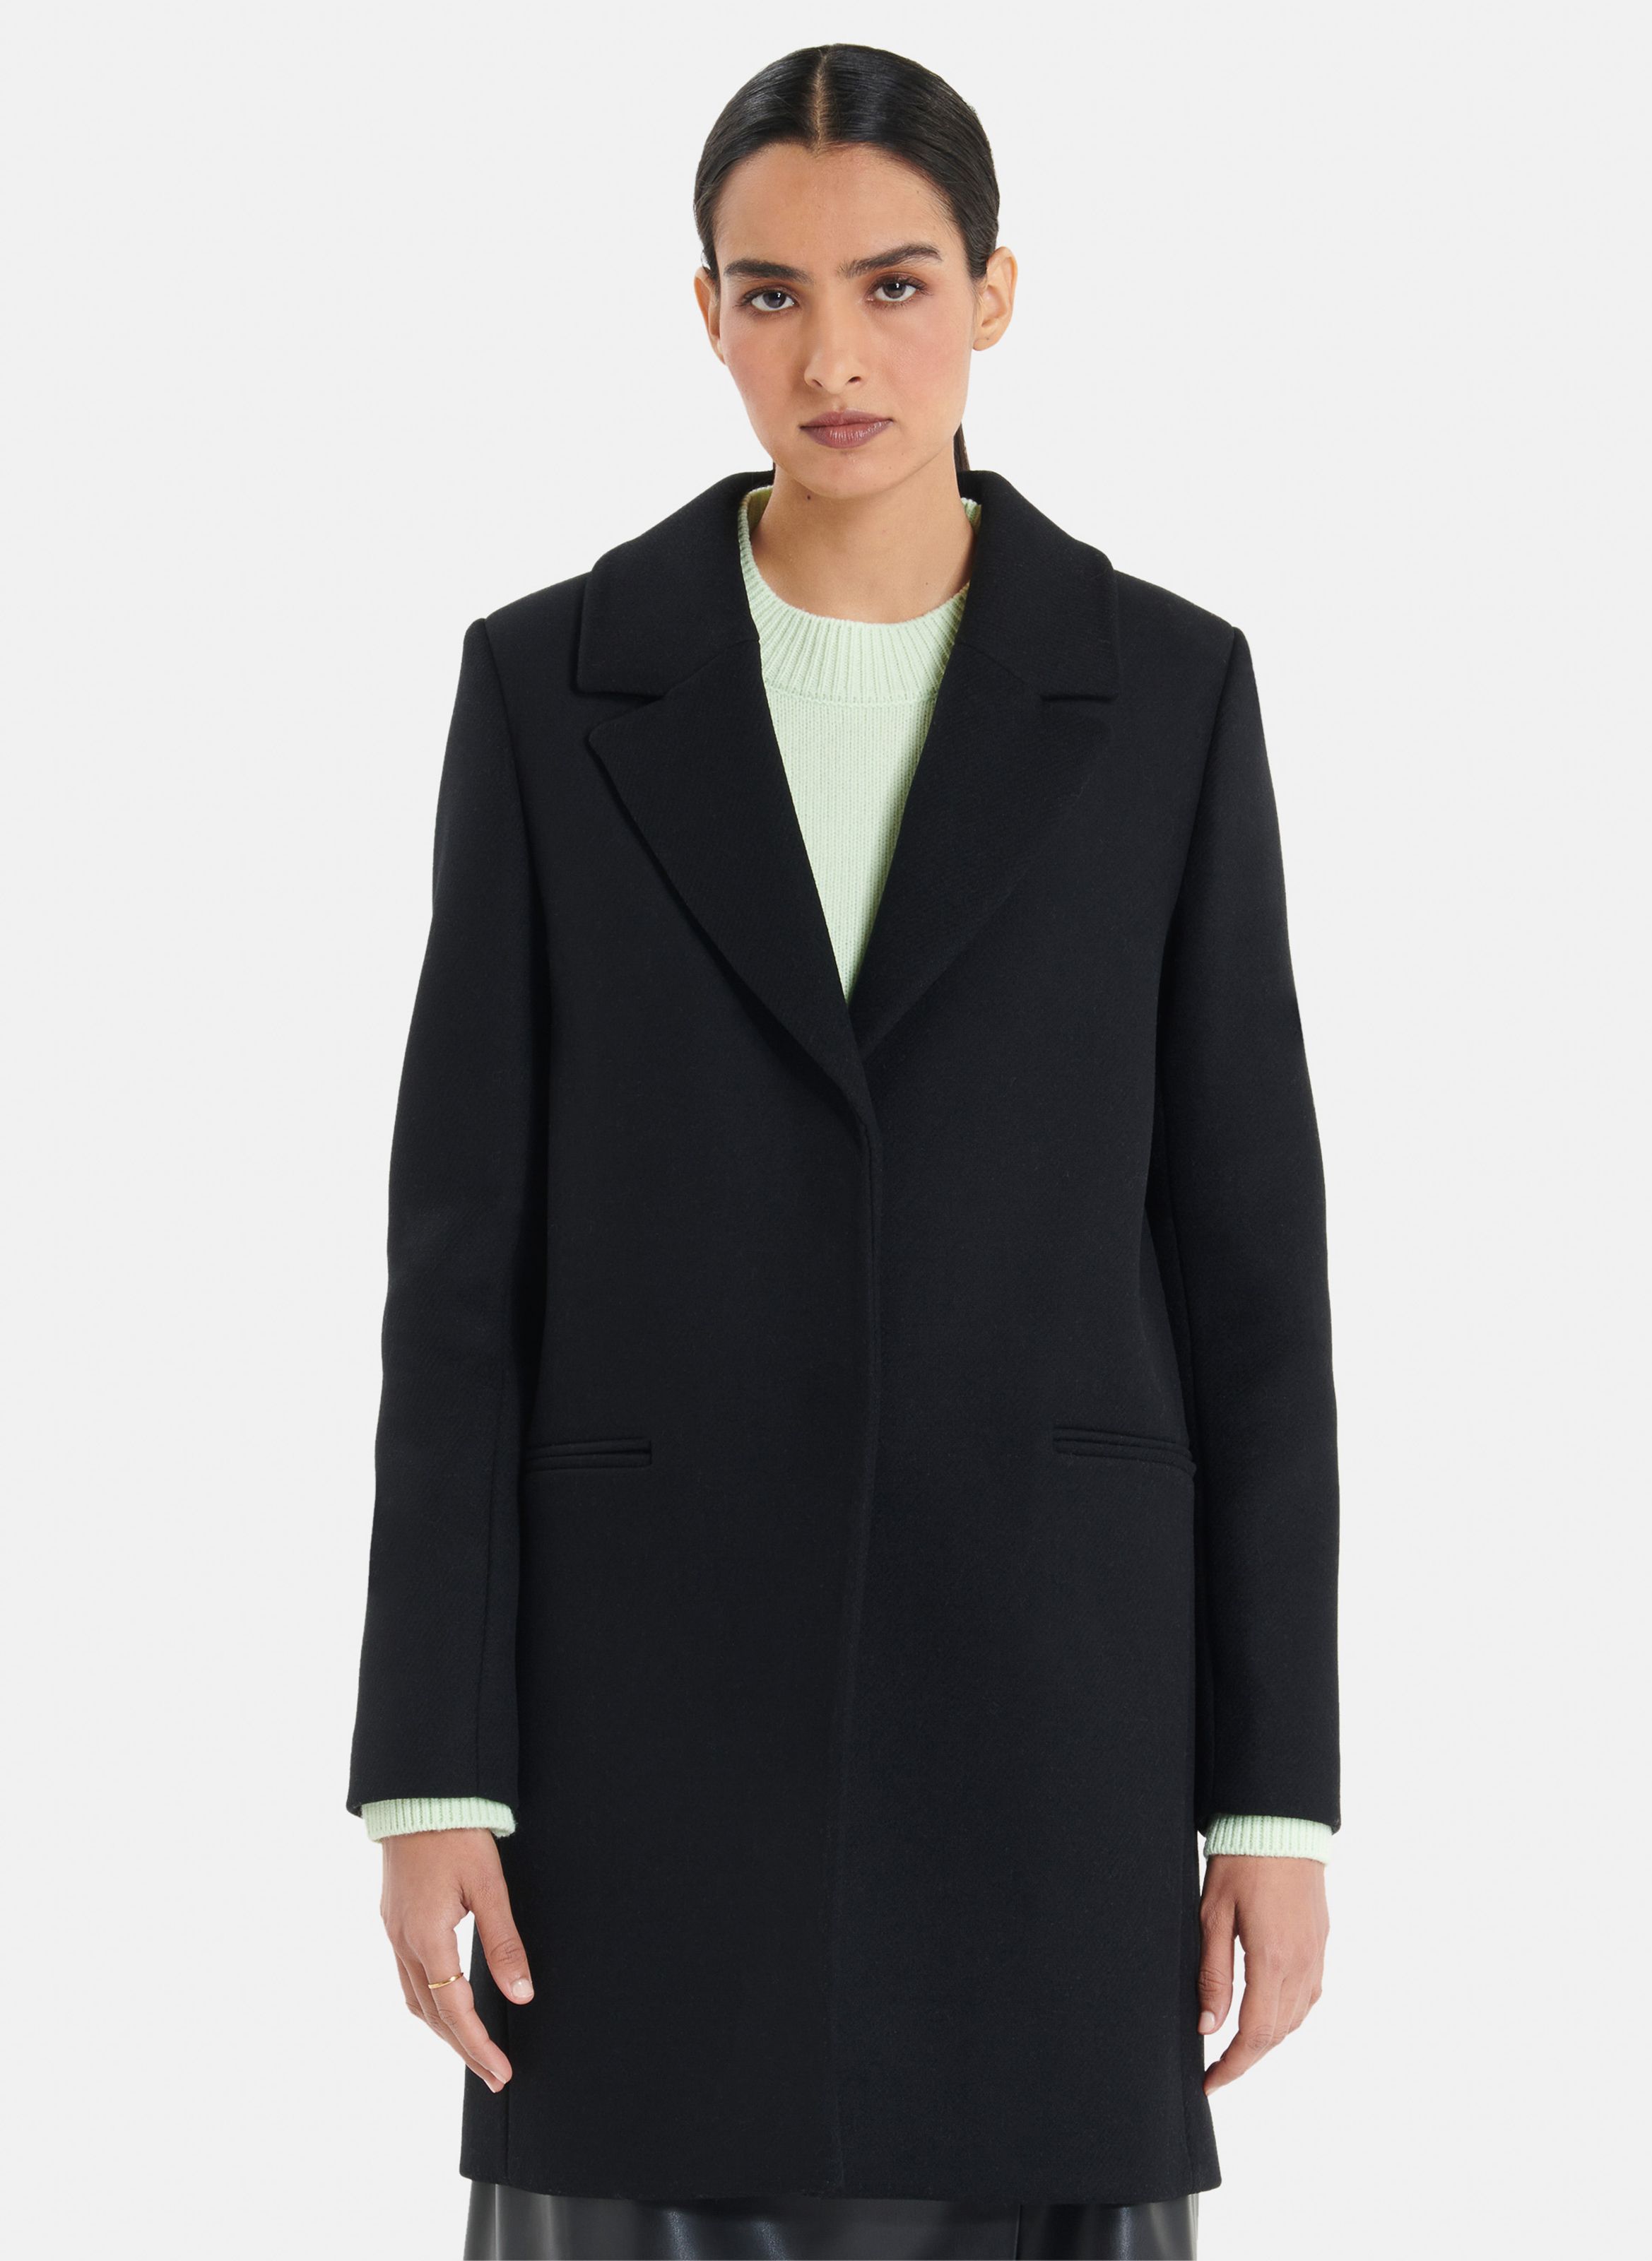 Femmes Vêtements Manteaux & vestes Manteaux Manteaux longs Zara Manteaux longs Abrigo negro recto lana 